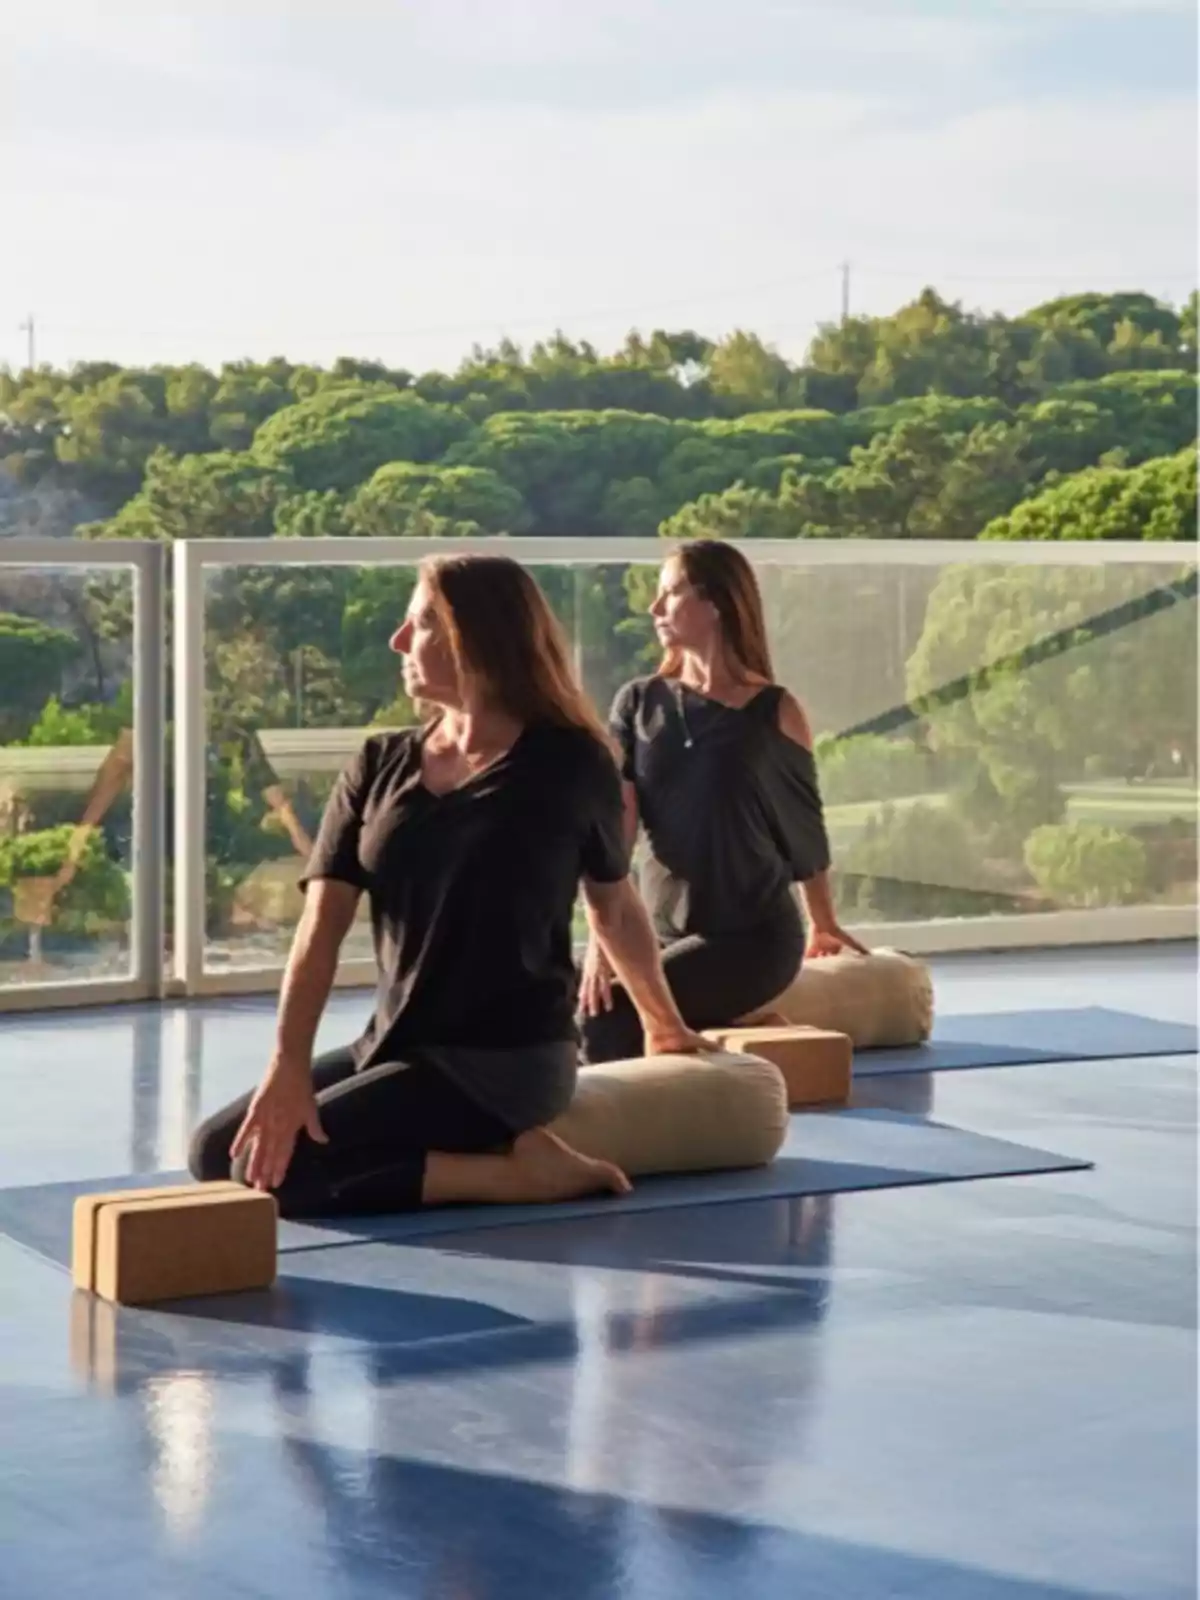 Dos mujeres practicando yoga en una terraza con vista a un paisaje verde.